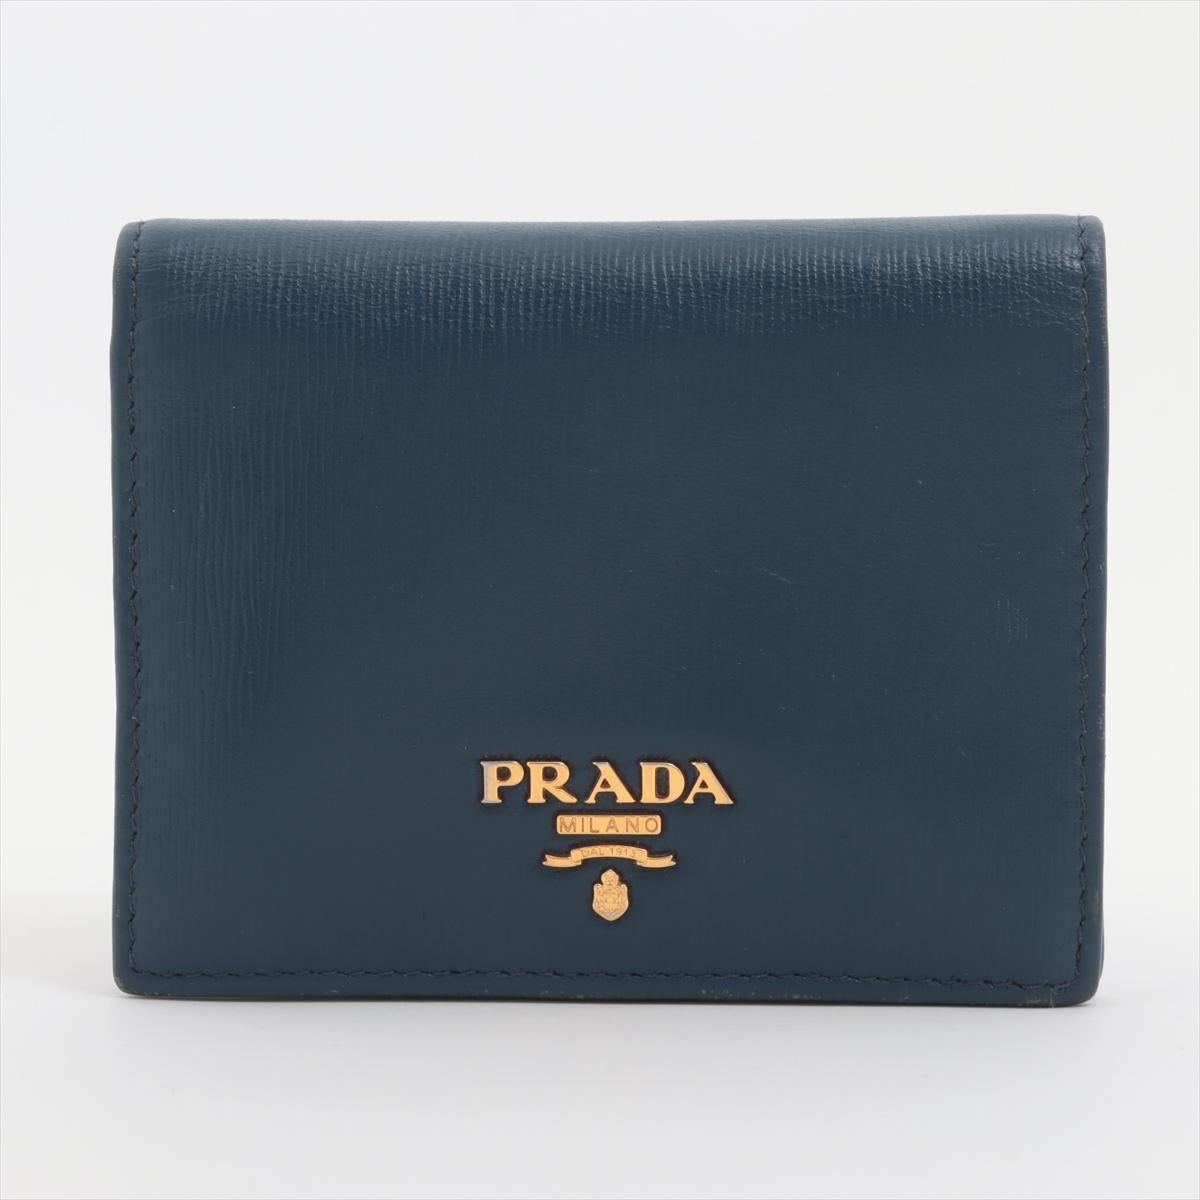 Le portefeuille compact en cuir Vitello Move de Prada en bleu est un accessoire chic et polyvalent qui allie sans effort fonctionnalité et luxe. Confectionné dans le cuir Vitello Move, signature de Prada, ce portefeuille présente une texture lisse